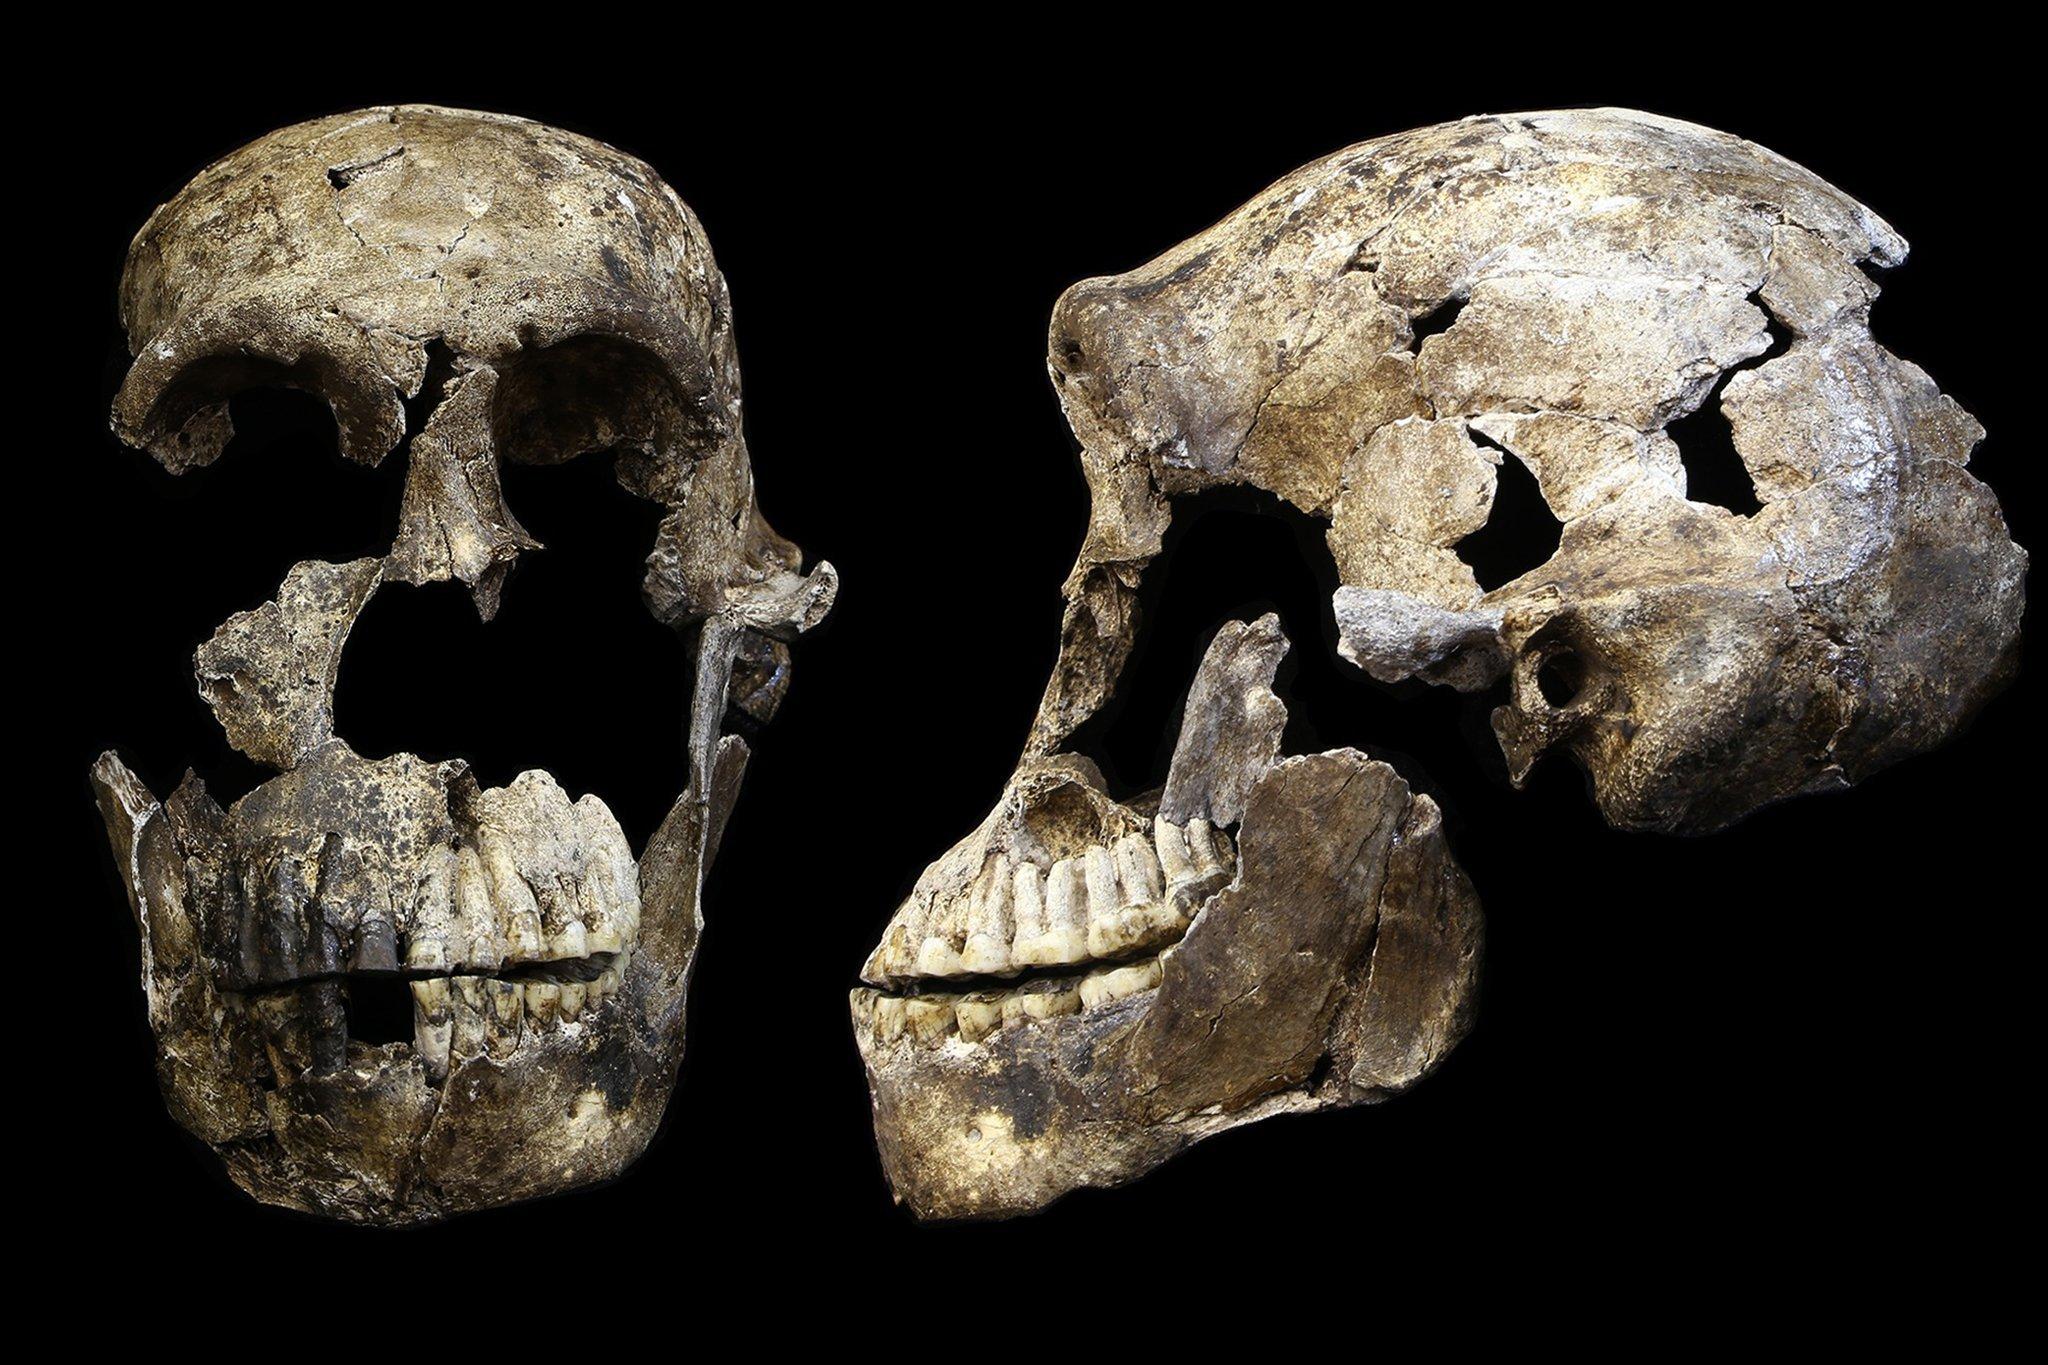 Vor schwarzem Hintergrund ist der weitgehend erhaltene fossile Schädel eines Urmenschen zu sehen, sowohl von der Seite als auch von vorn: Der Hirnbereich ist klein, dicke Knochenwülste liegen über den Augen und die Kiefer sind kräftig ausgebildet.